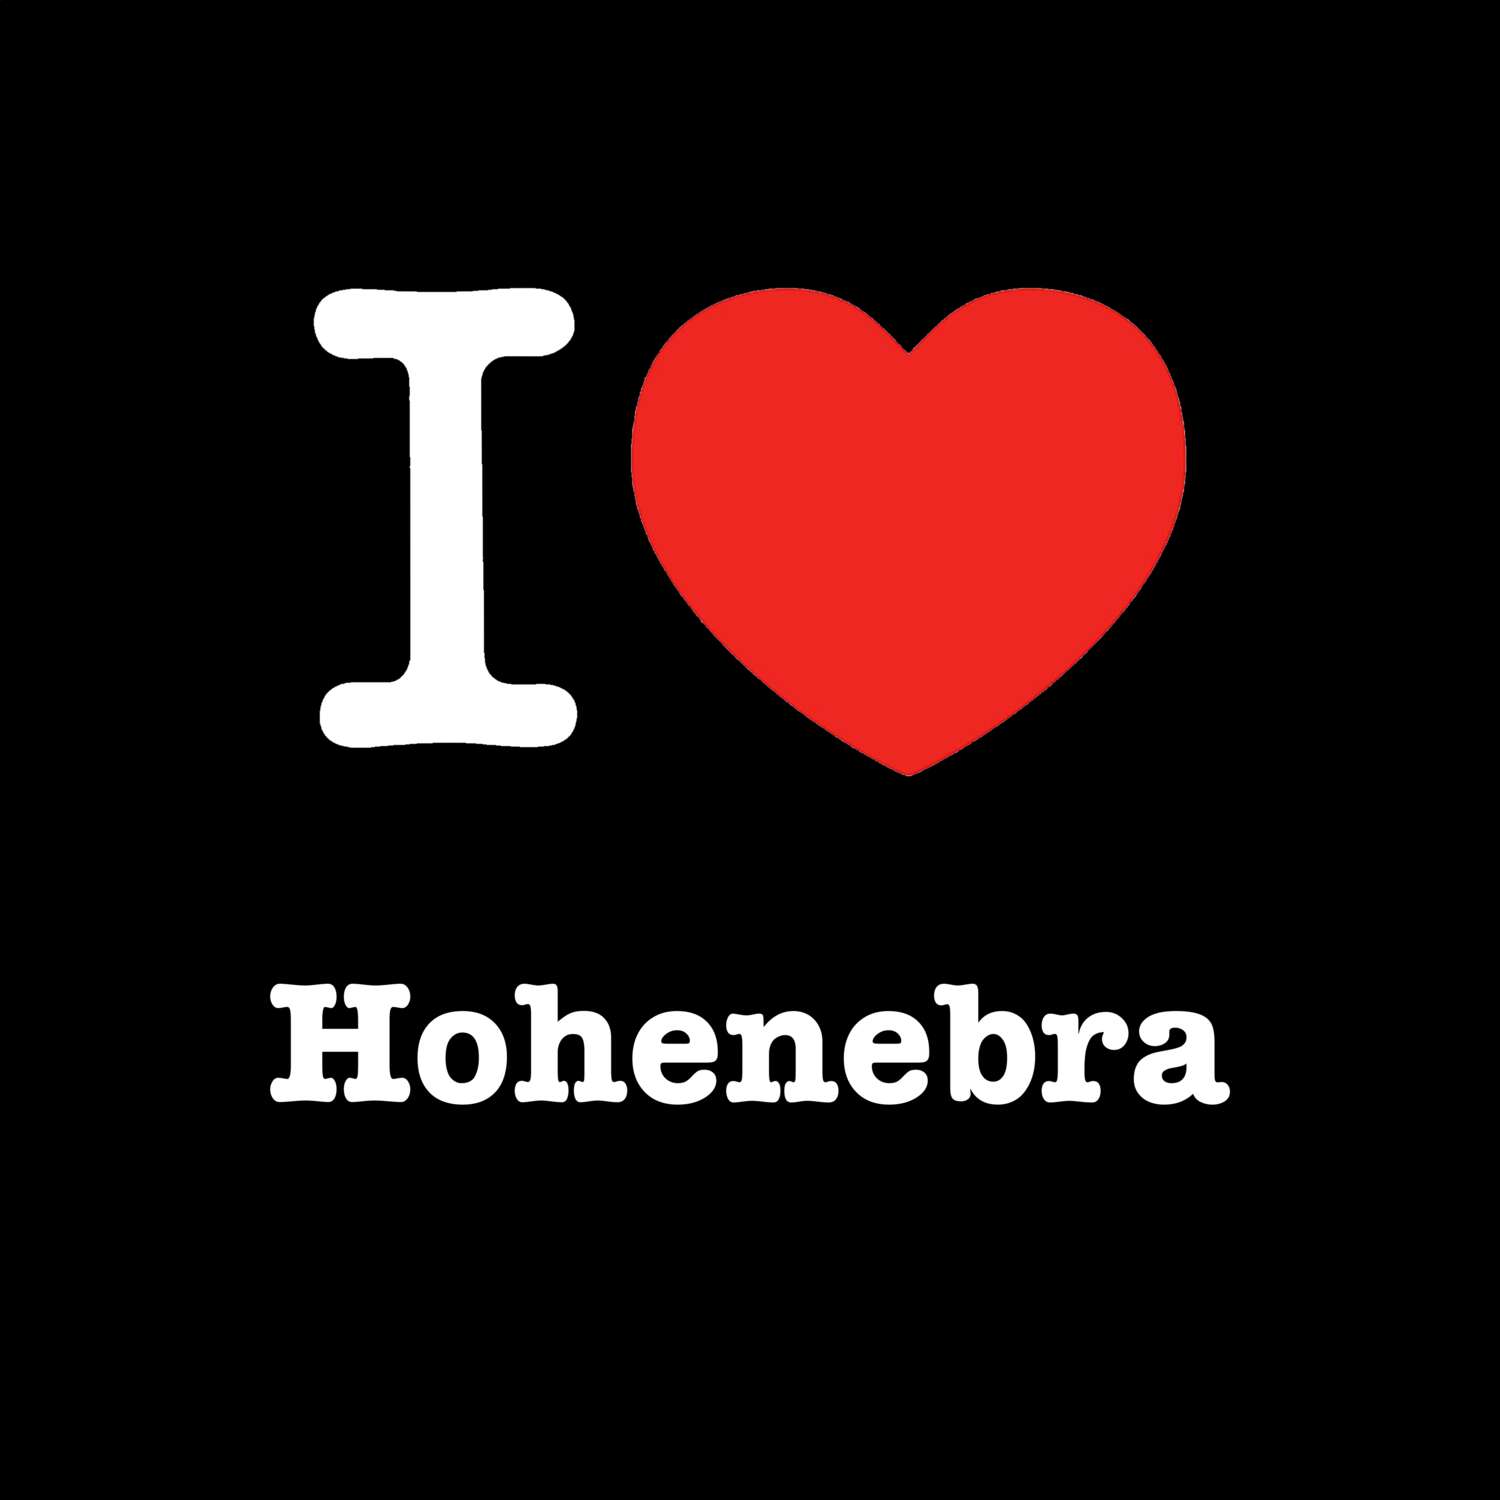 Hohenebra T-Shirt »I love«